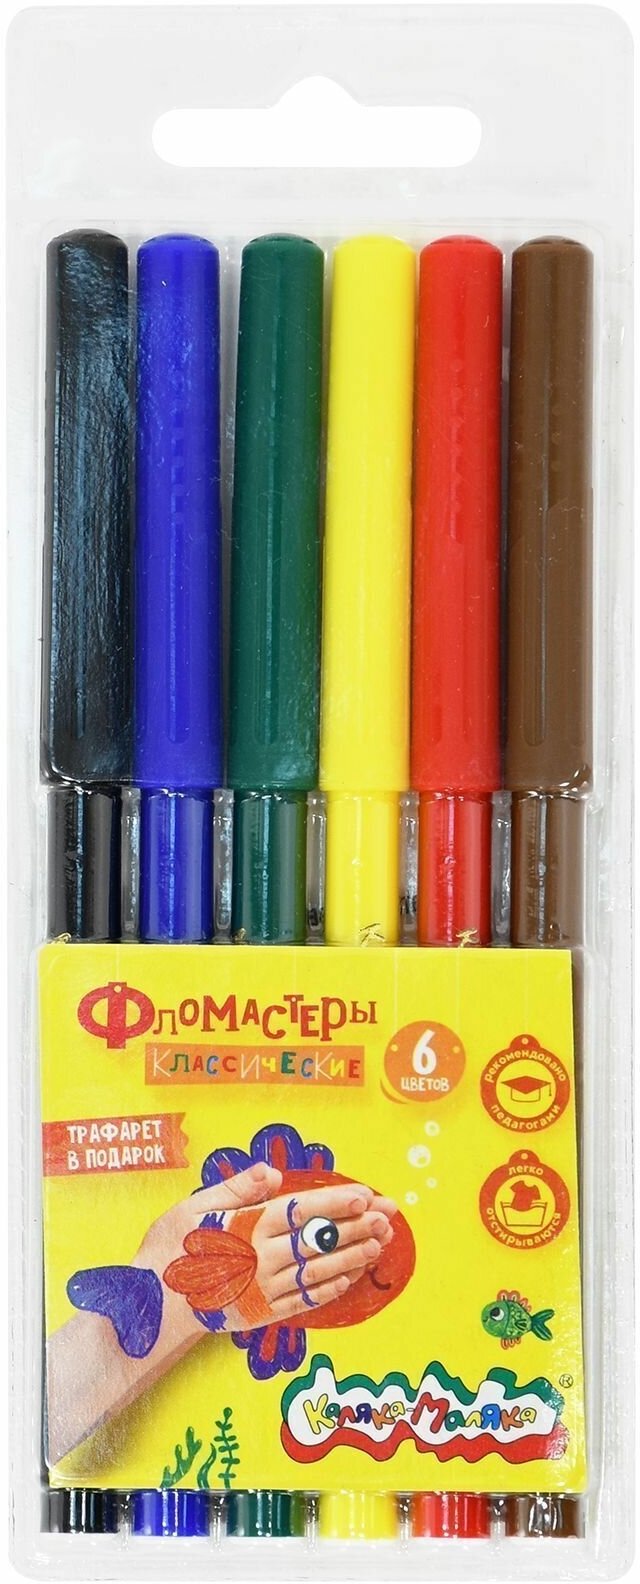 Каляка-Маляка набор фломастеров, ФКМ06, разноцветный